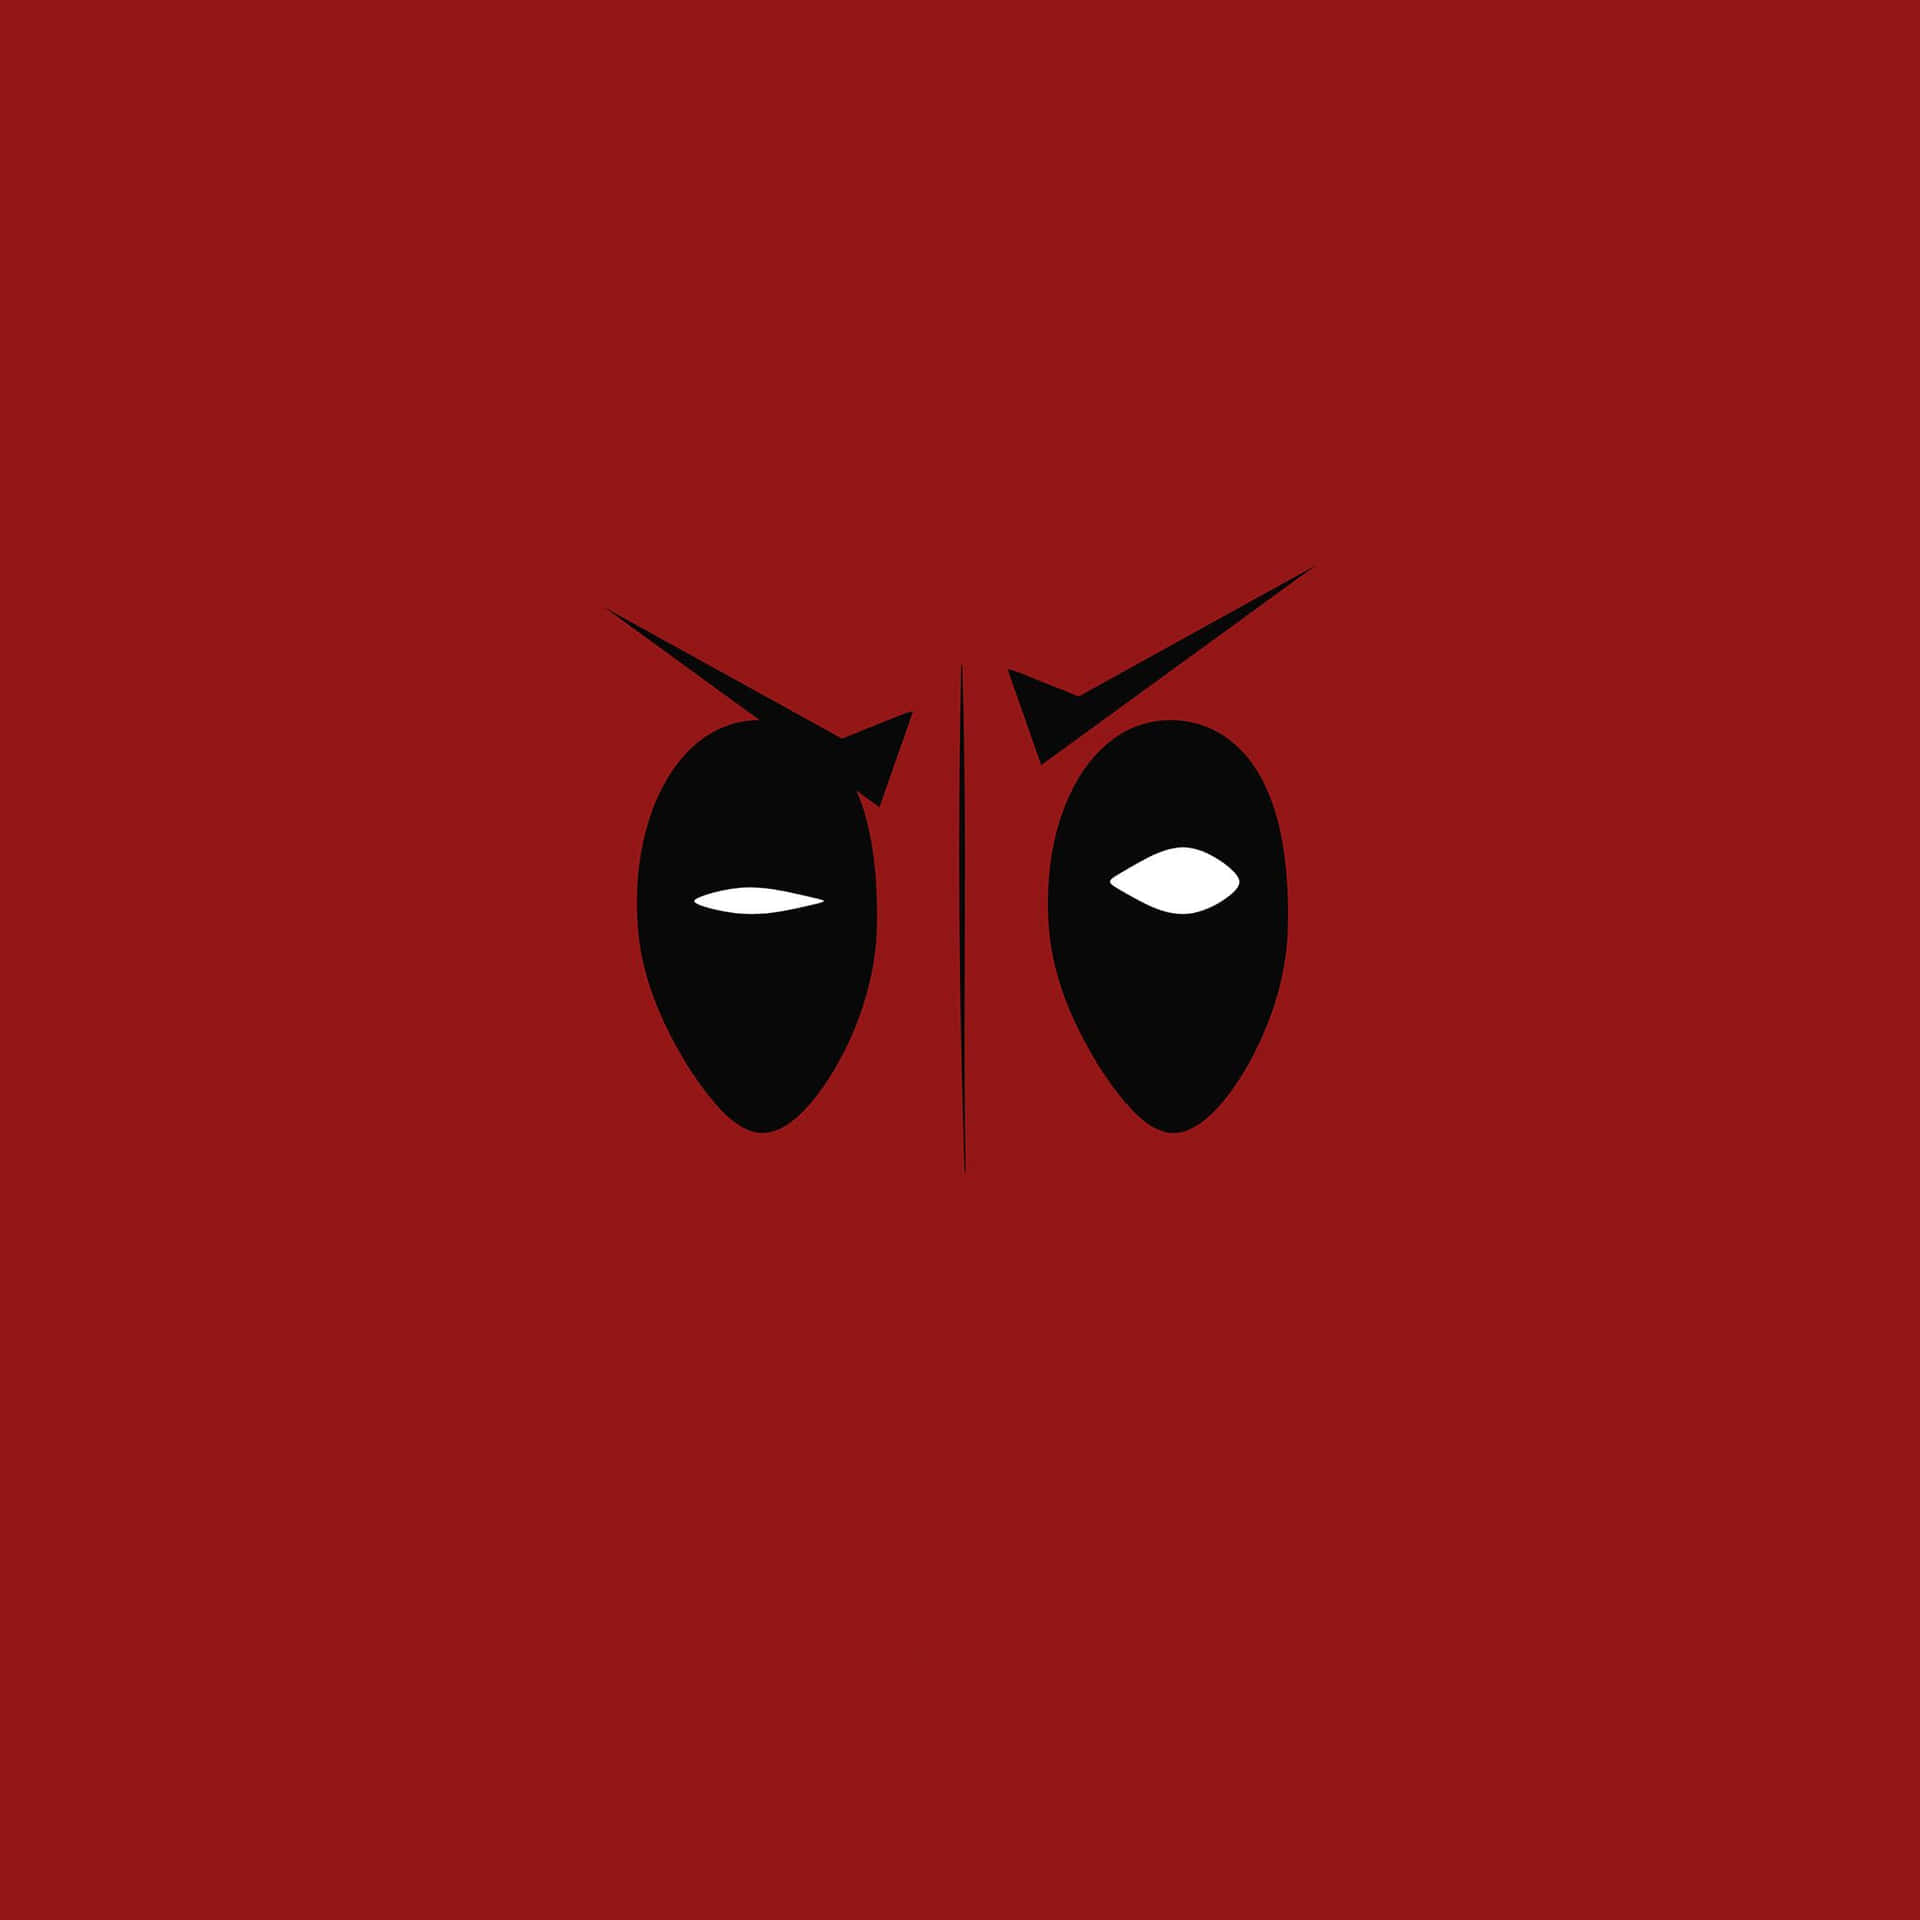 Red Minimalistic Deadpool Background Illustration